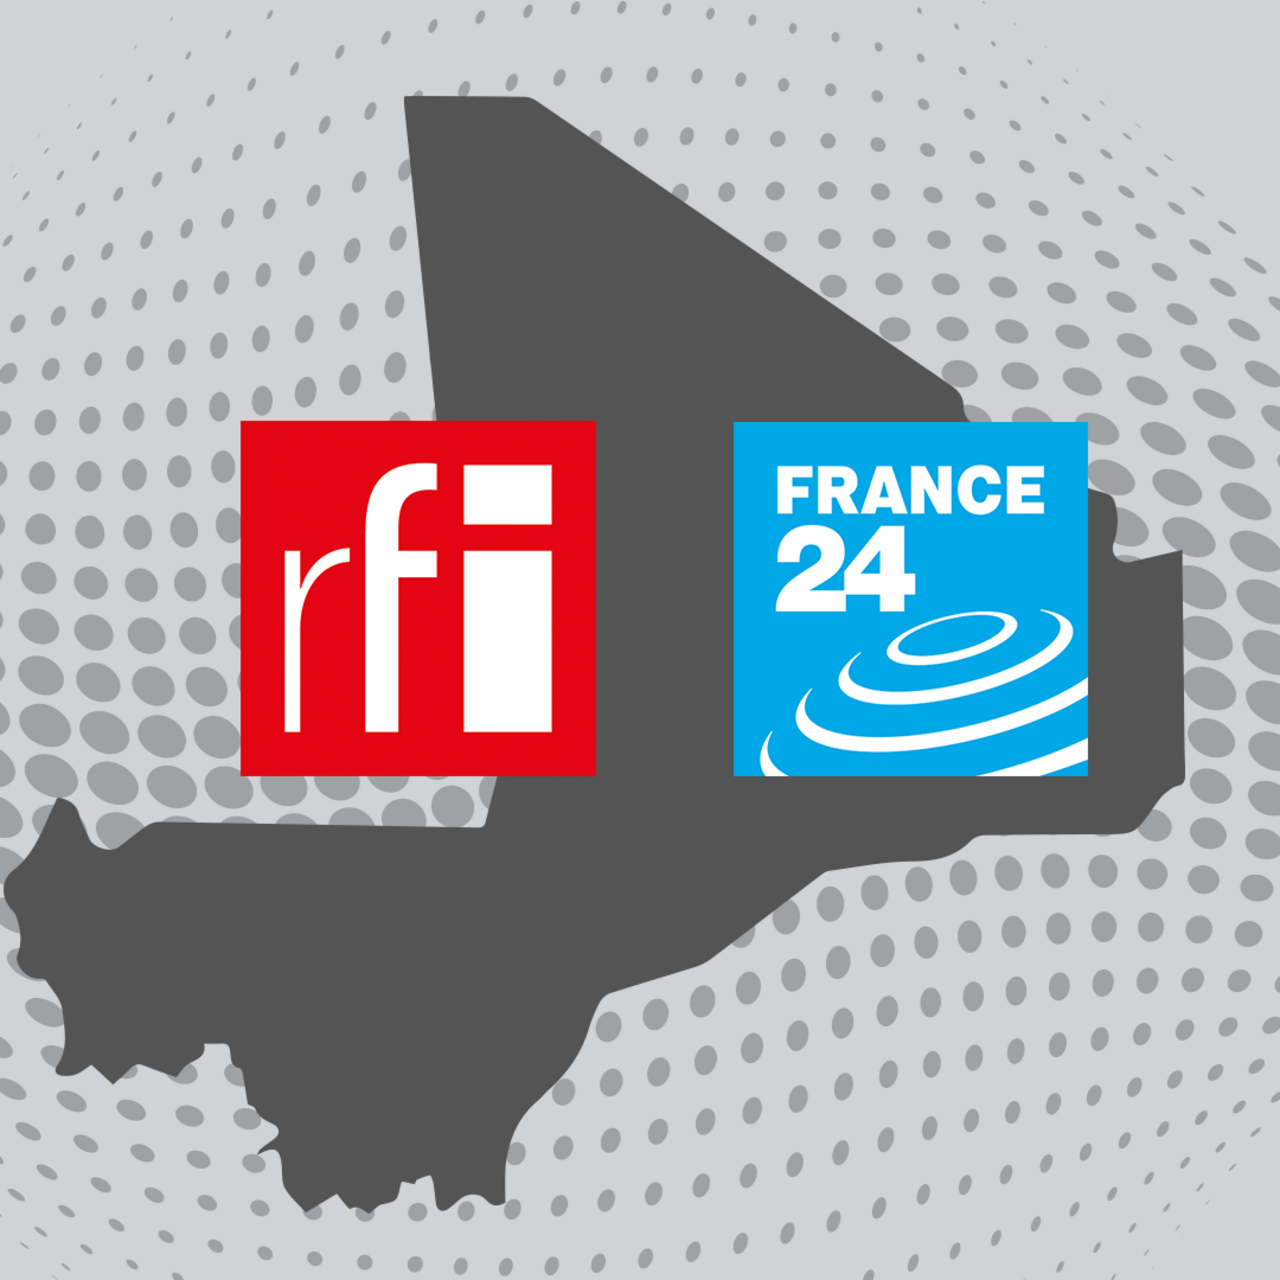 France Médias Monde conteste avec force la décision définitive de suspension de RFI et France 24 au Mali